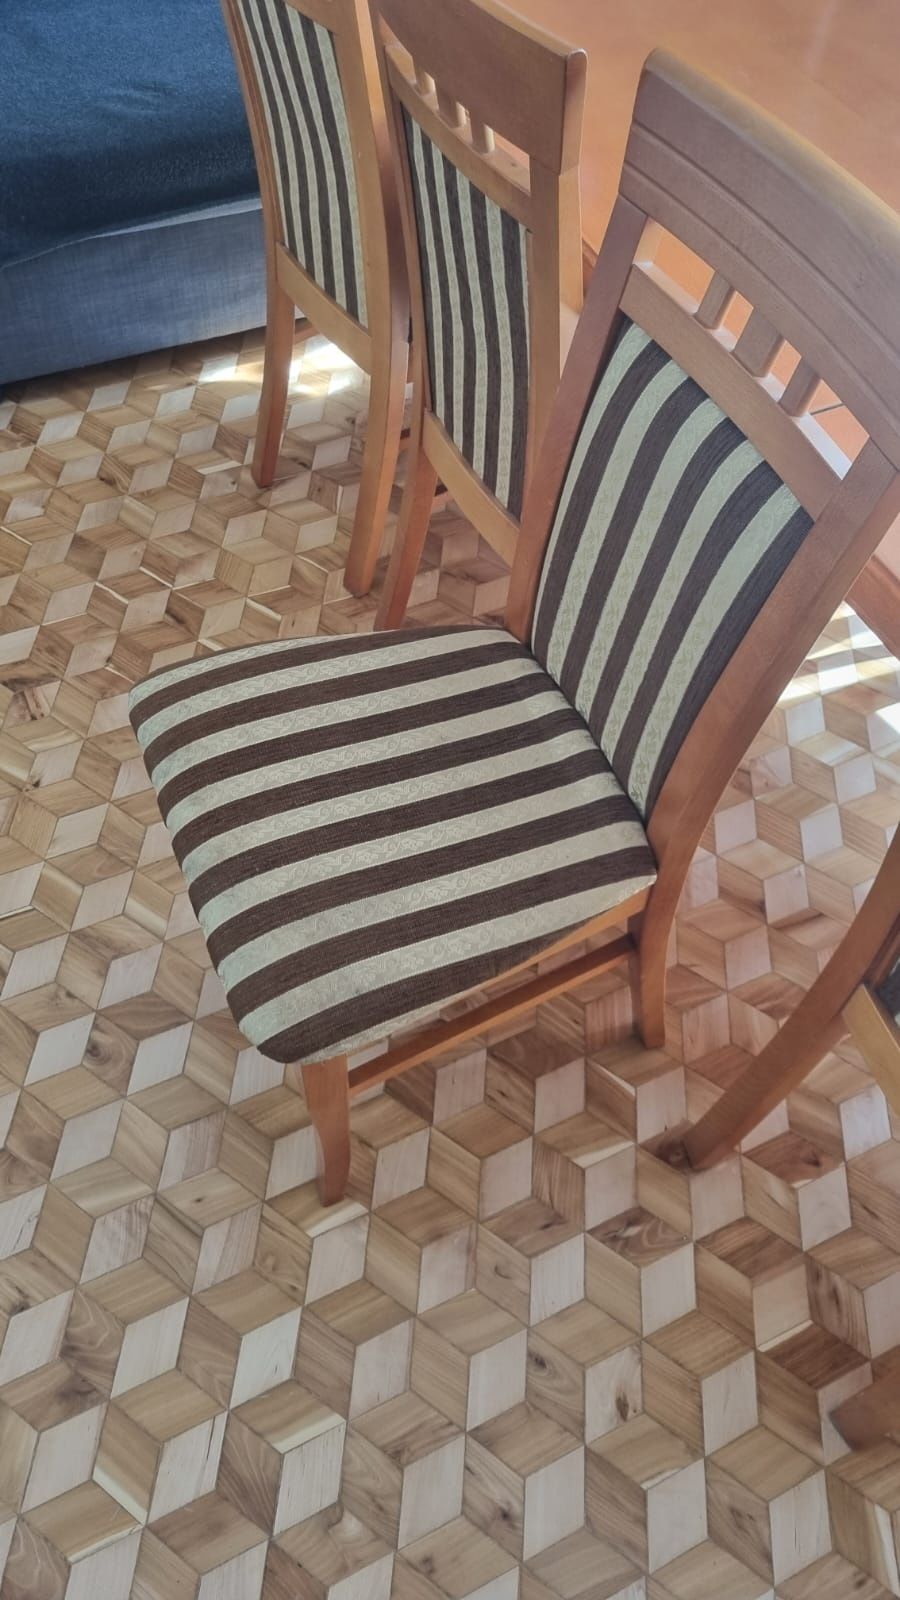 Drewniane krzesła komplet 6